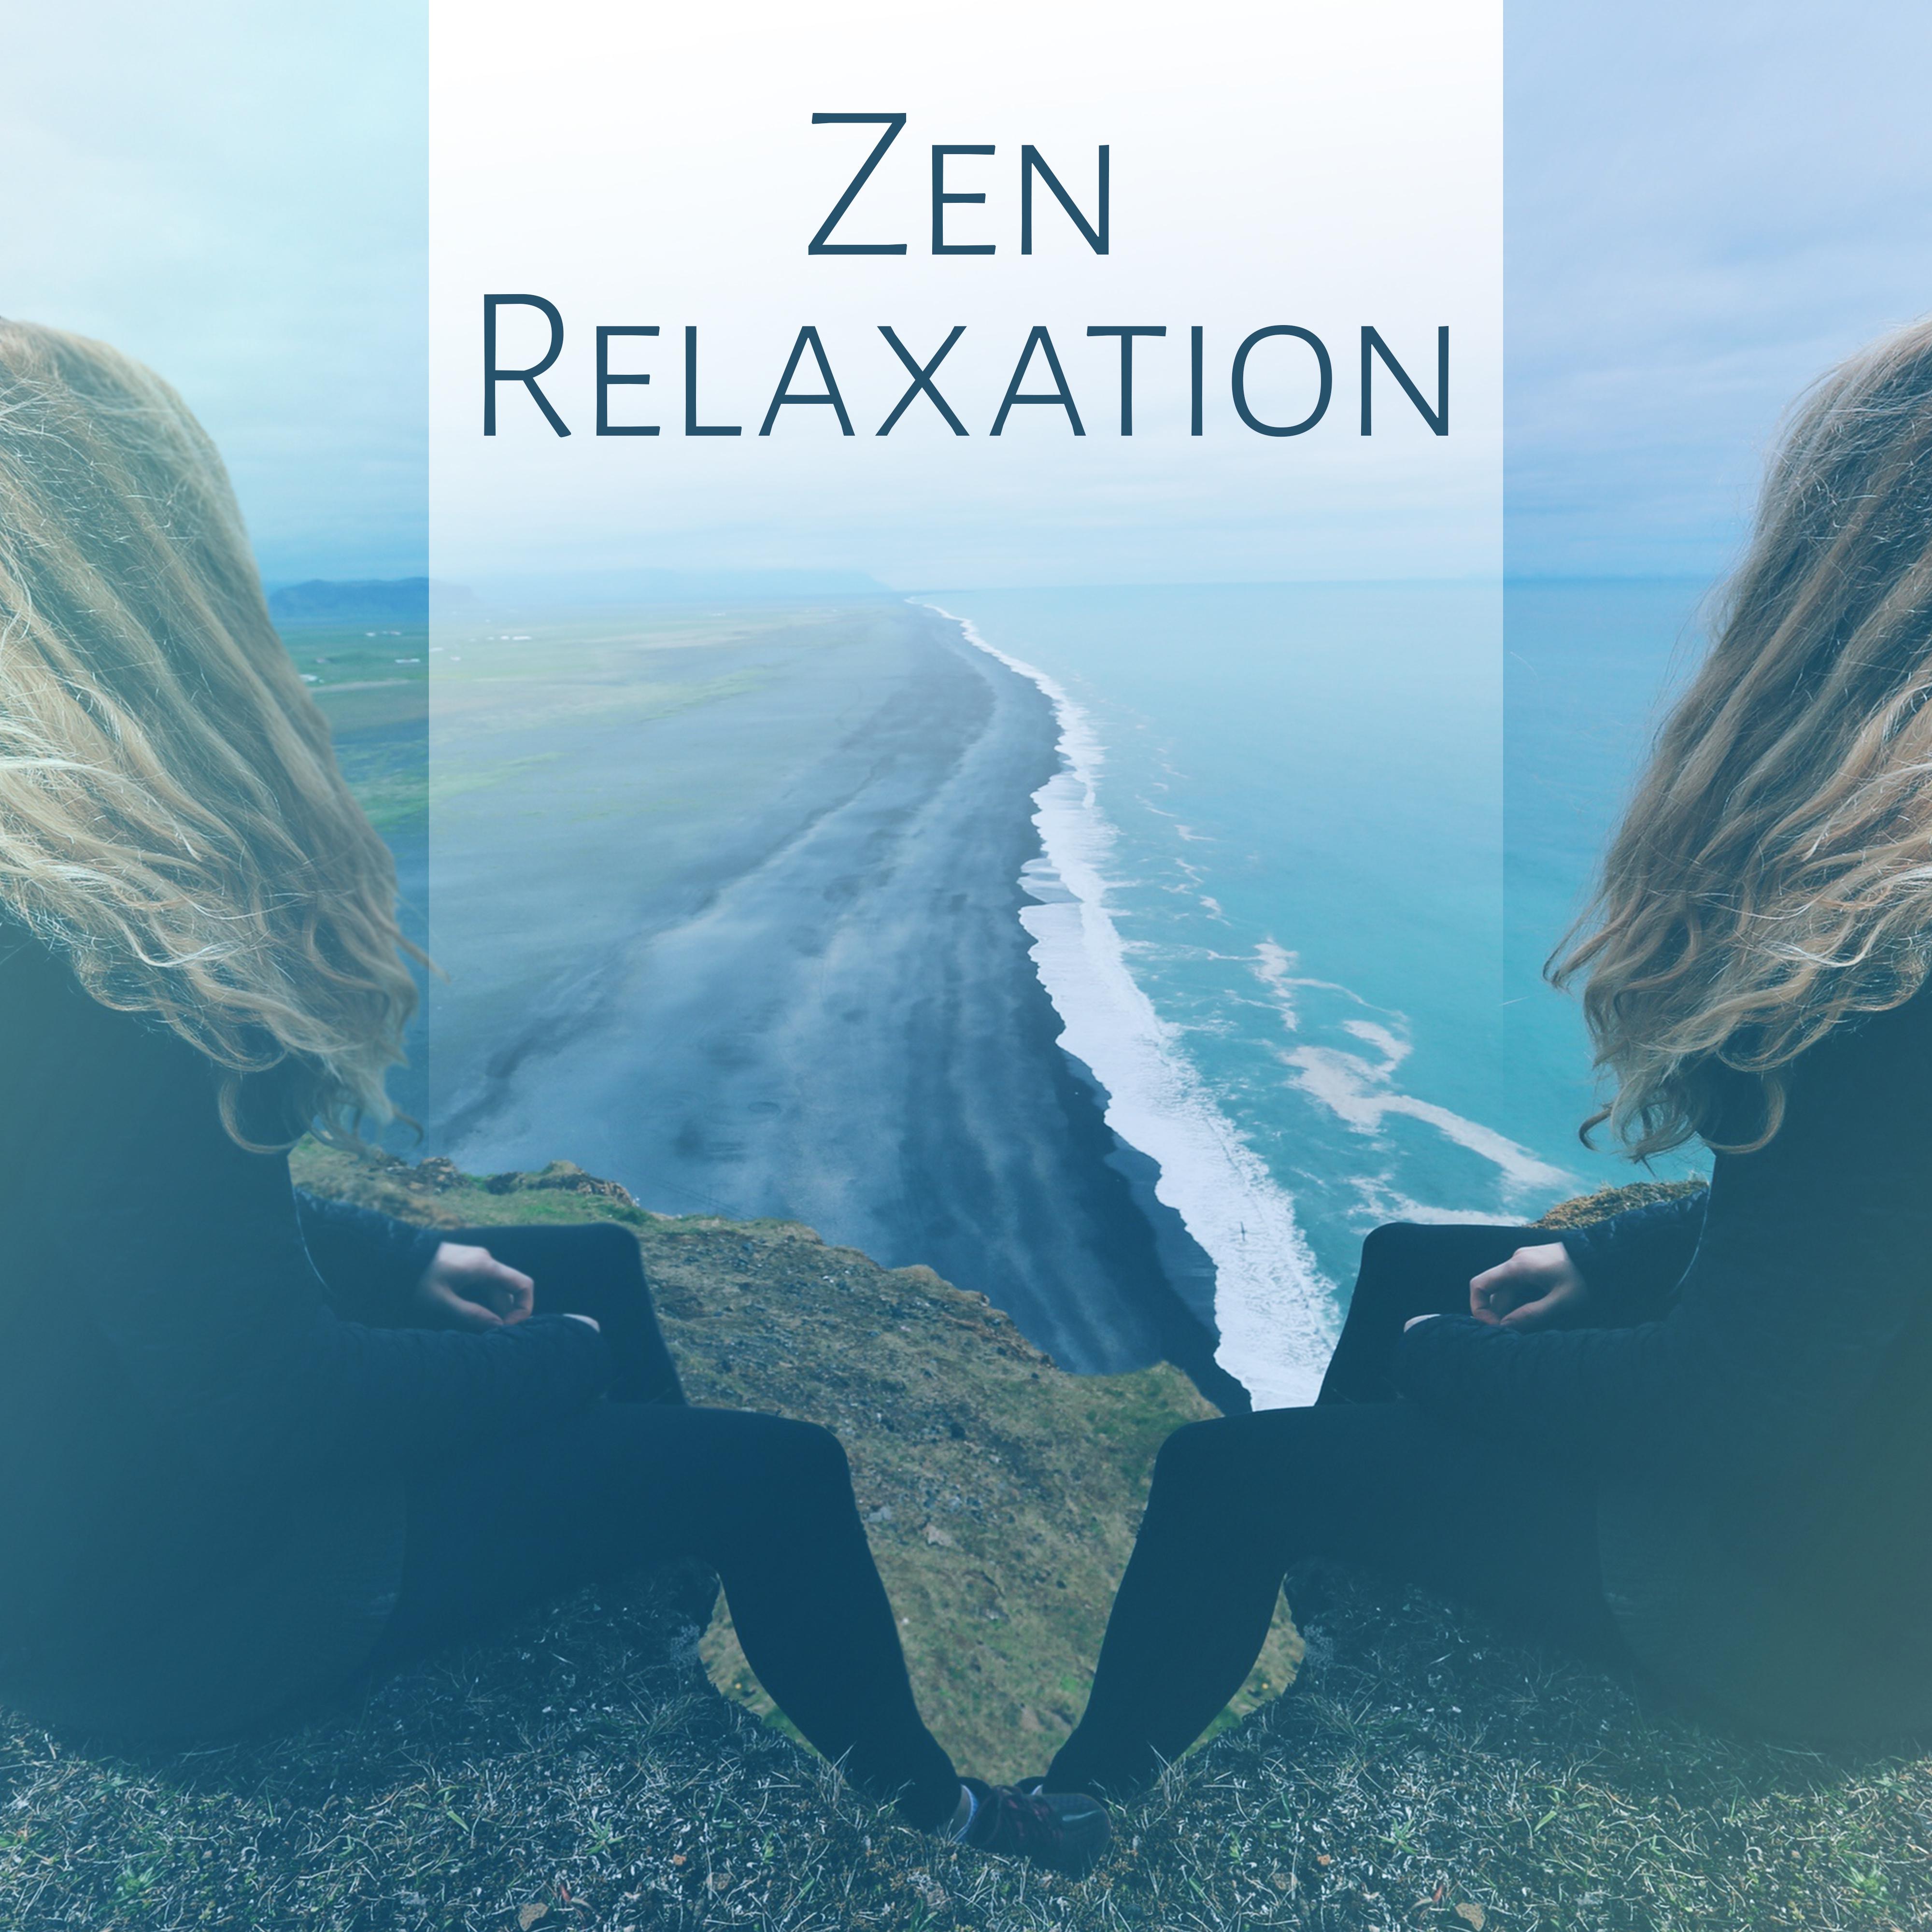 Zen Relaxation  Best Relaxing Music, New Age, Calming Sounds of Nature, Zen, Massage, Sleep, Rest